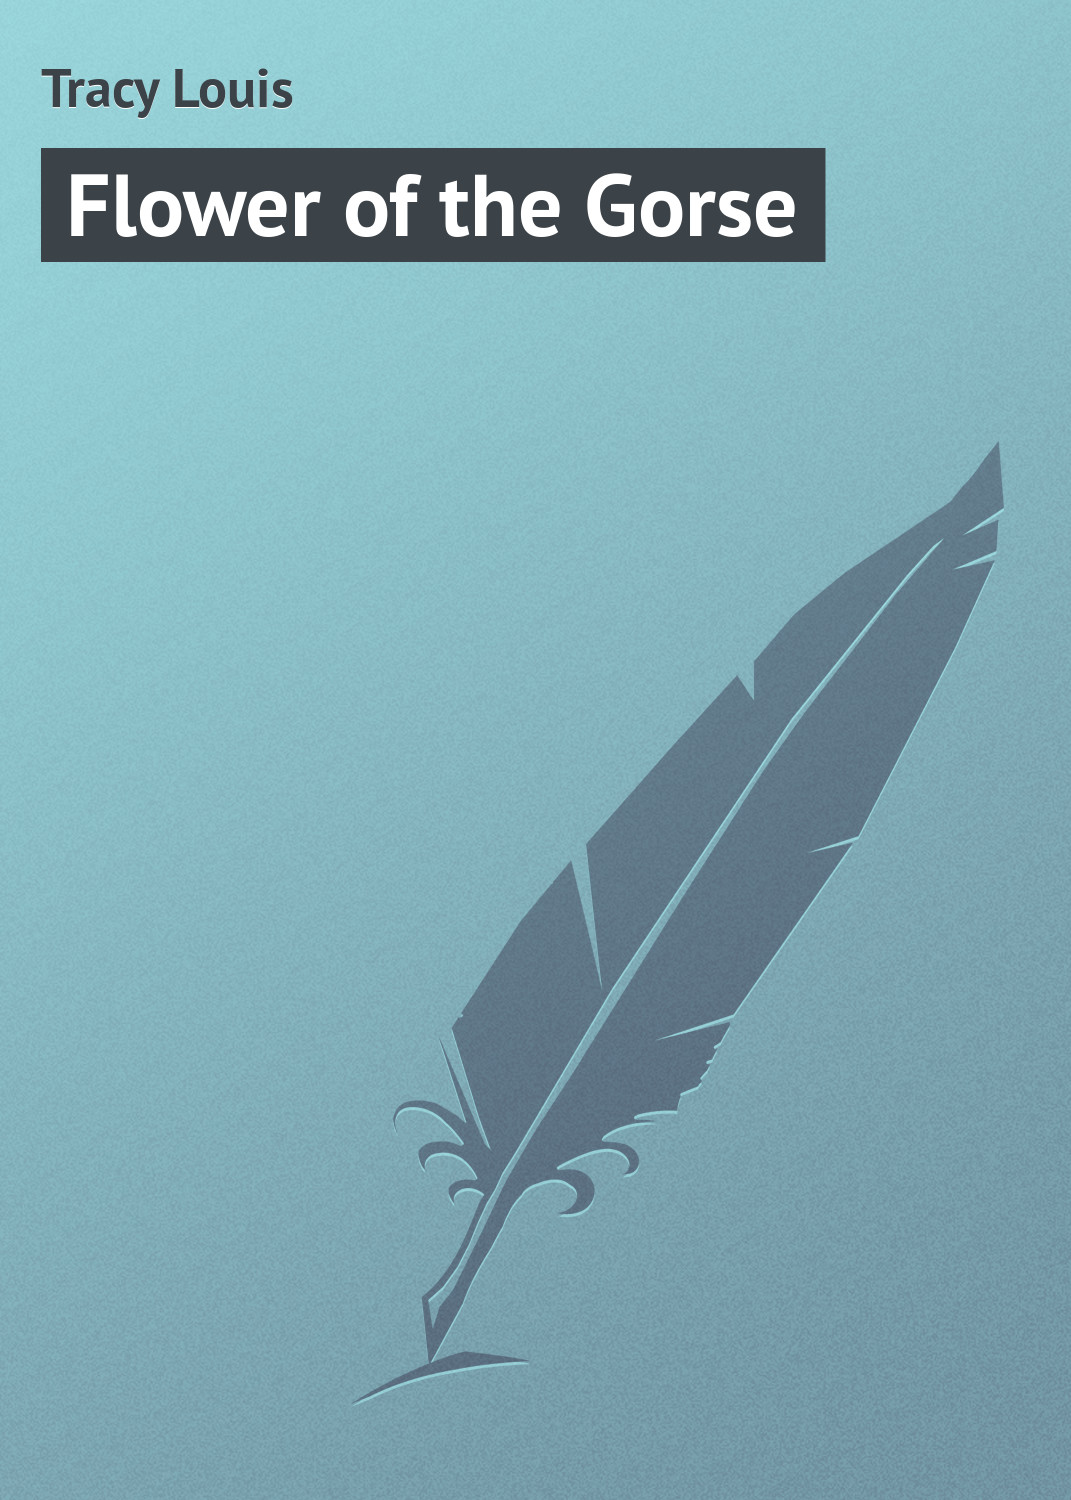 Книга Flower of the Gorse из серии , созданная Louis Tracy, может относится к жанру Зарубежная классика. Стоимость электронной книги Flower of the Gorse с идентификатором 23165851 составляет 5.99 руб.